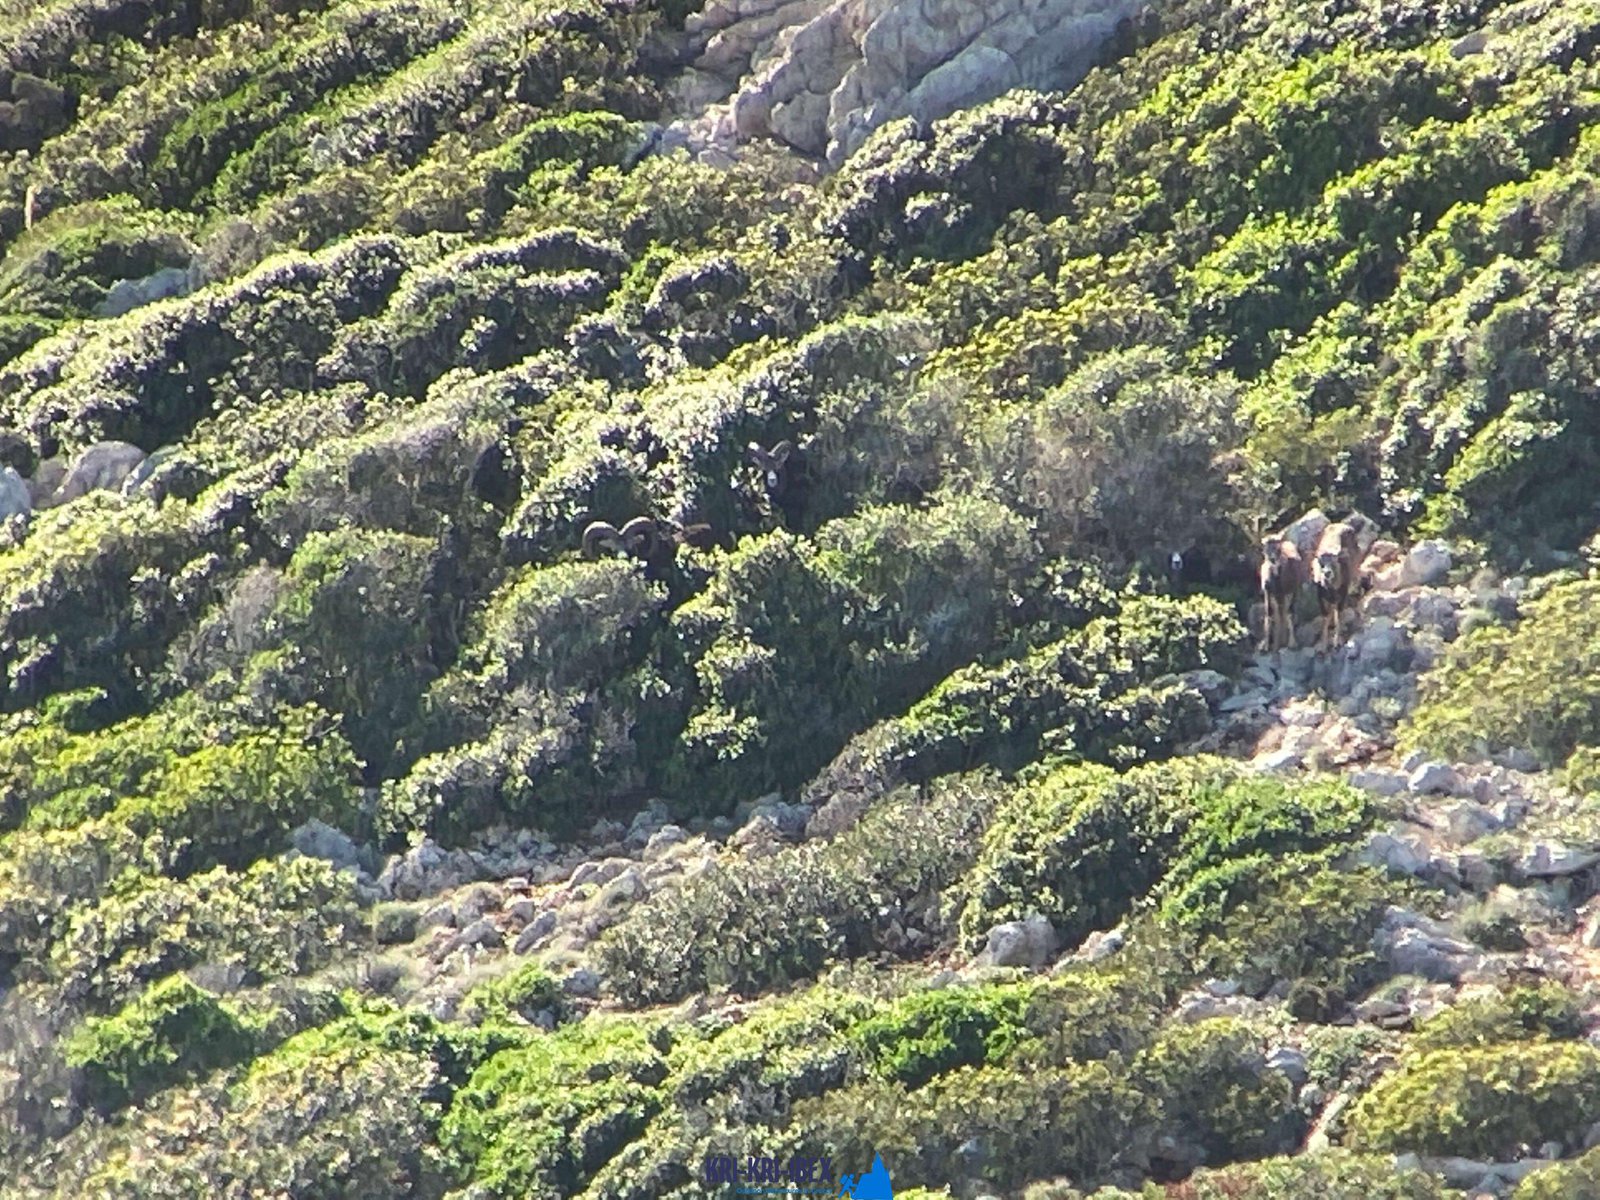 kri kri ibex hunting in greece